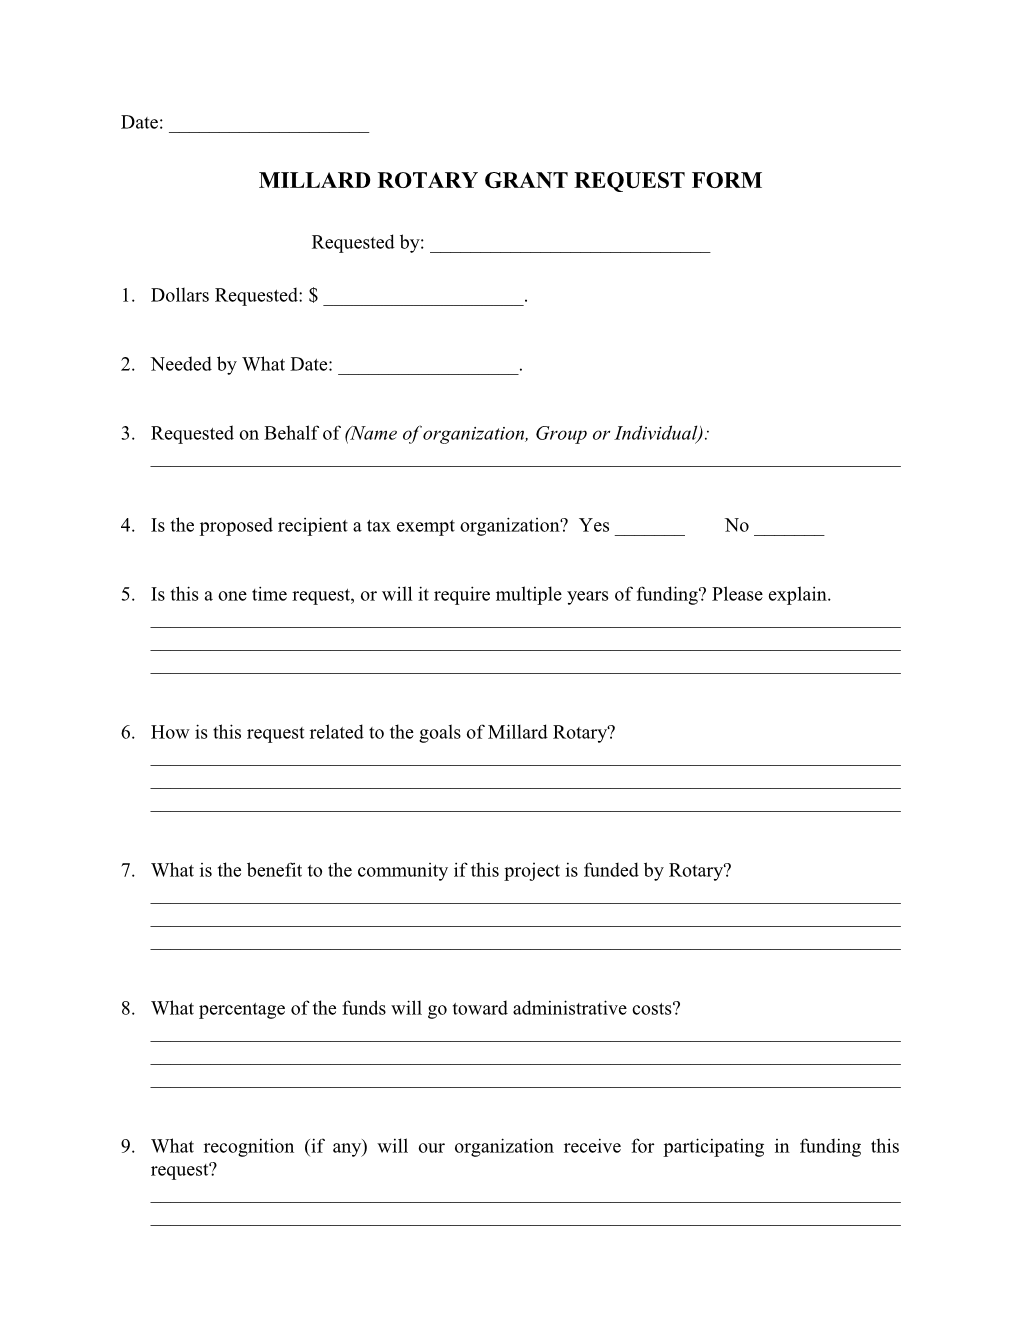 Millard Rotary Grant Request Form